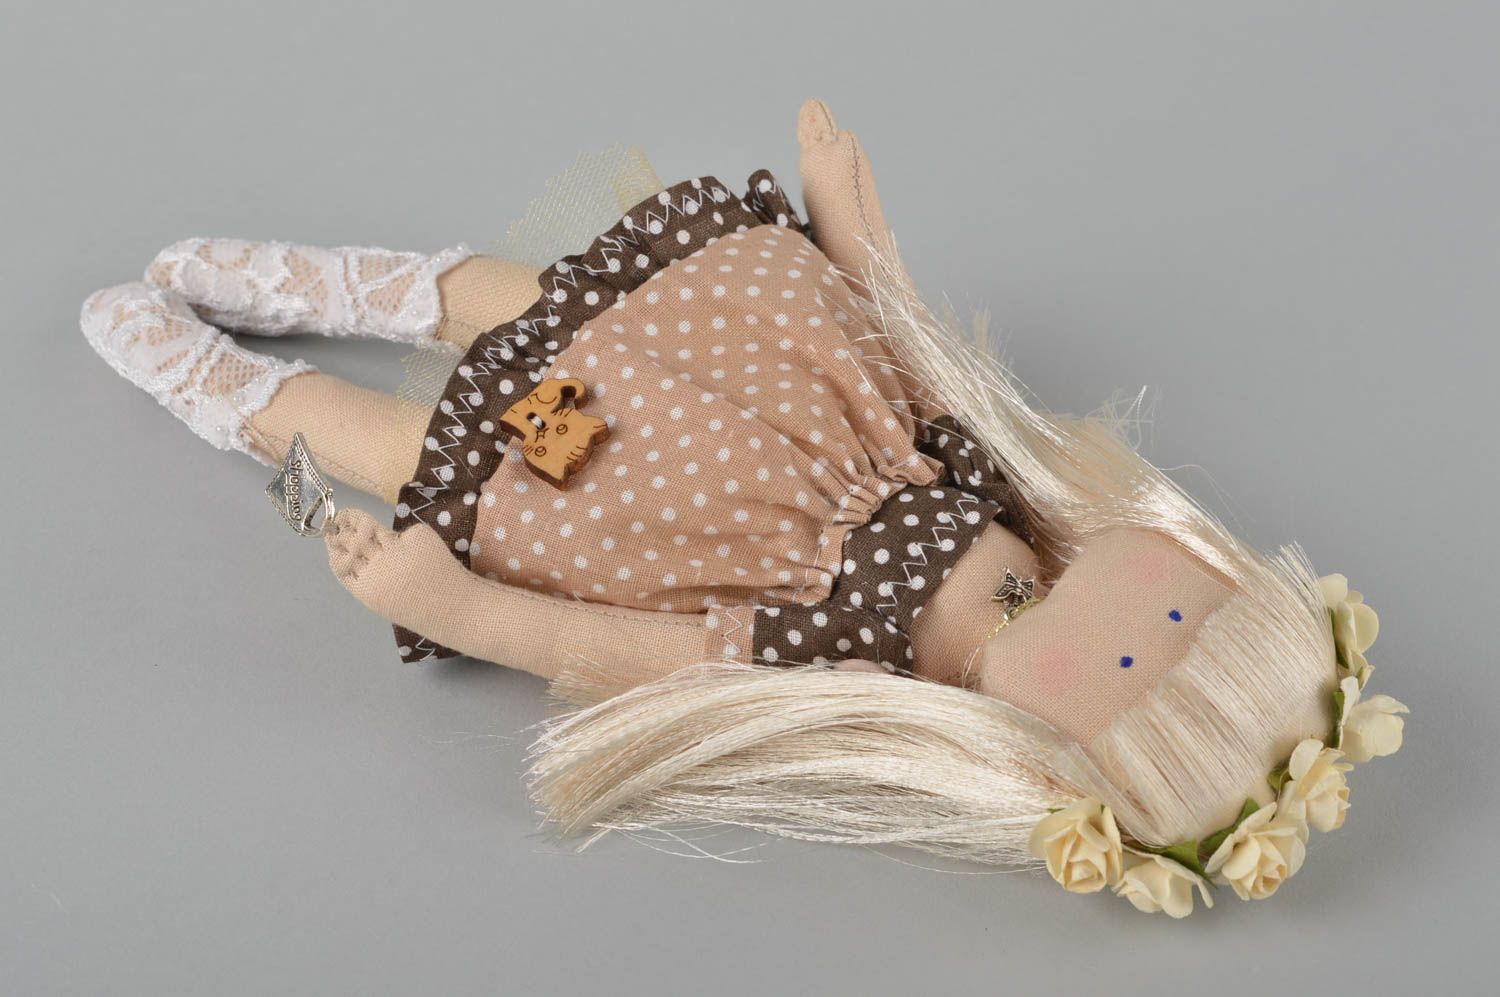 Handmade Spielzeug Puppe Künstler Puppe Wohnzimmer Deko mit Kranz schön grell foto 4